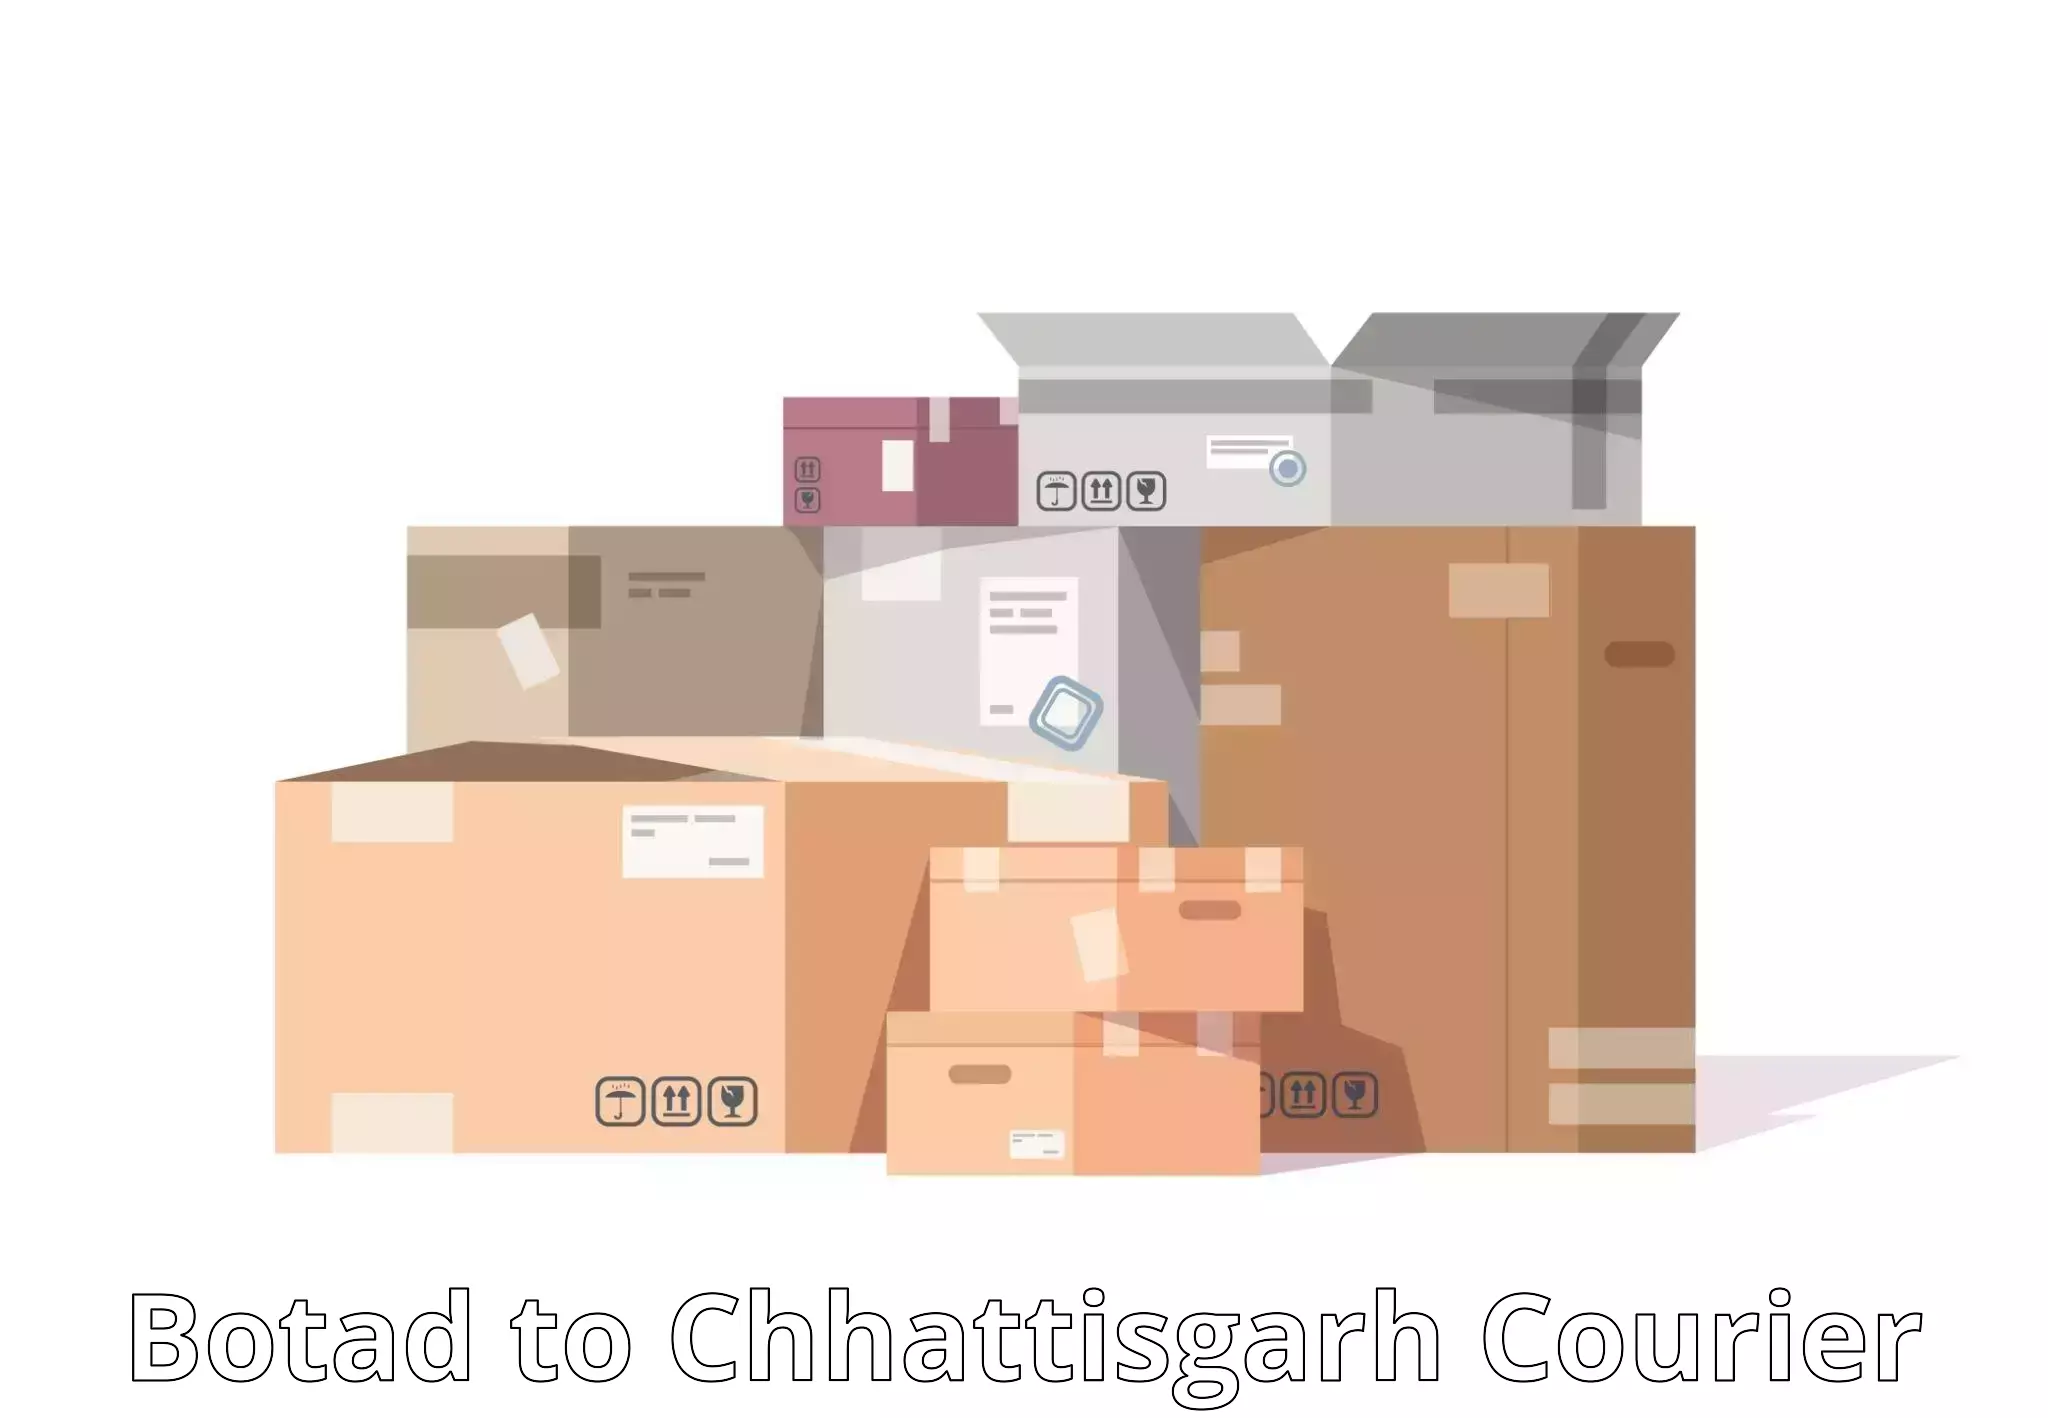 Pharmaceutical courier Botad to Patna Chhattisgarh